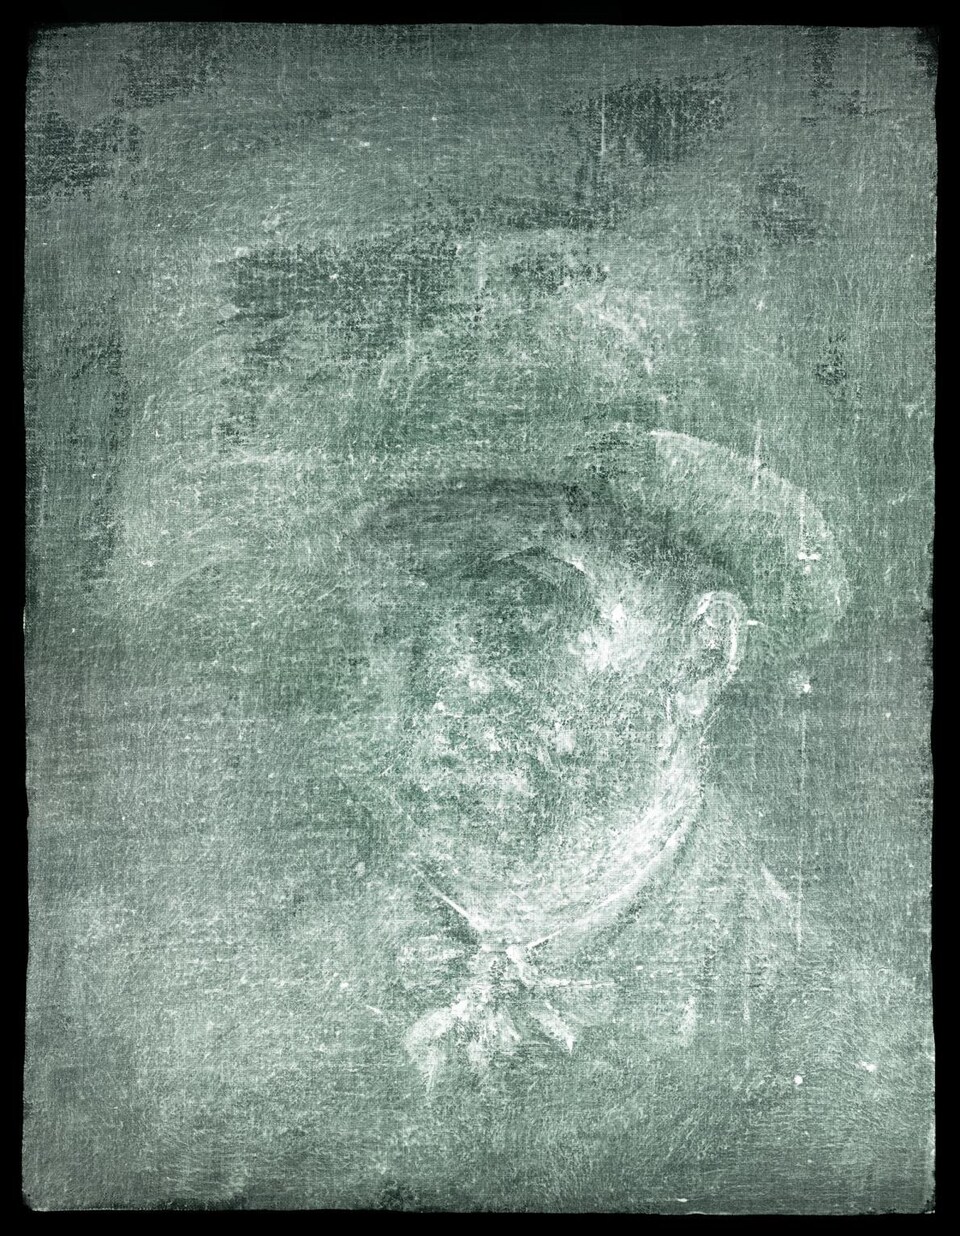 Une image aux rayons X d'un autorportrait du peintre Van Gogh. 